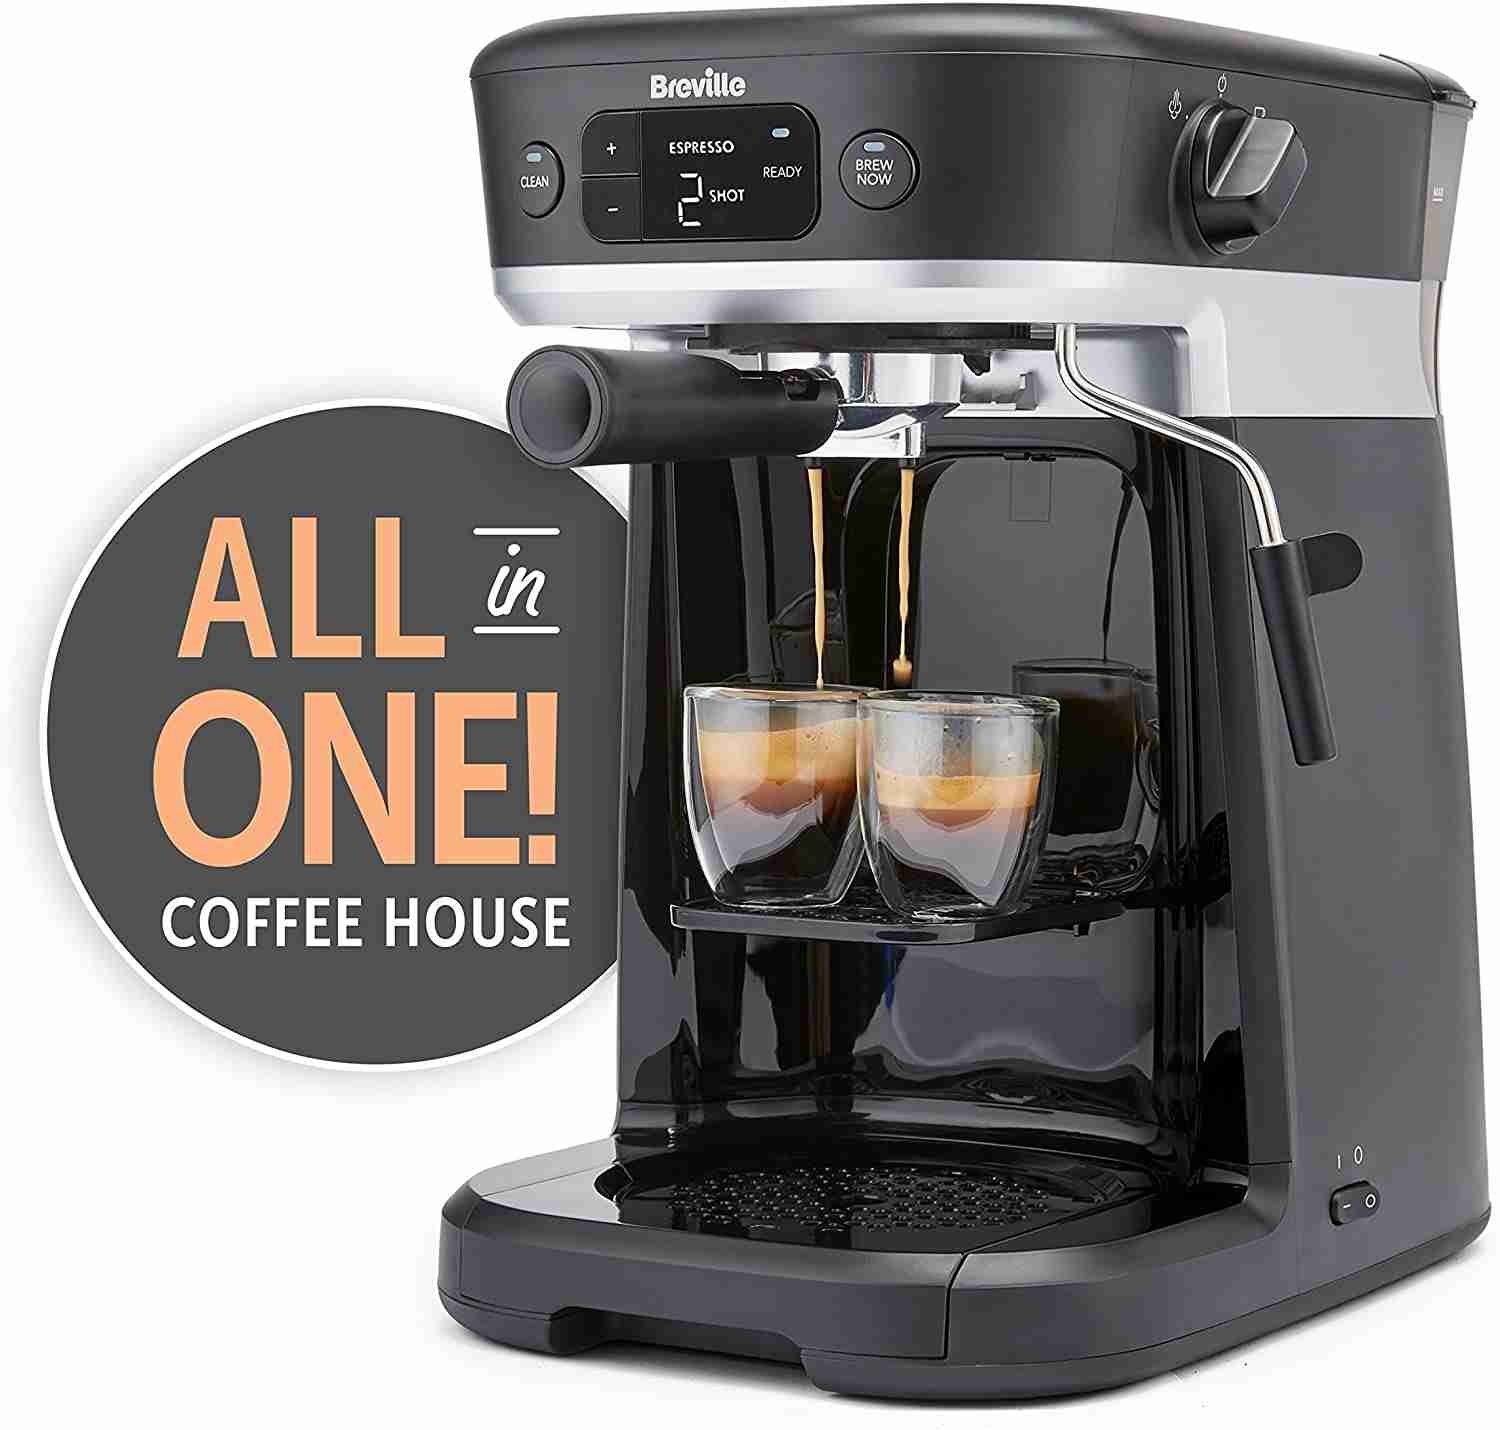 Breville Barista AllinOne Espresso Machine Your Ultimate Coffee Maker